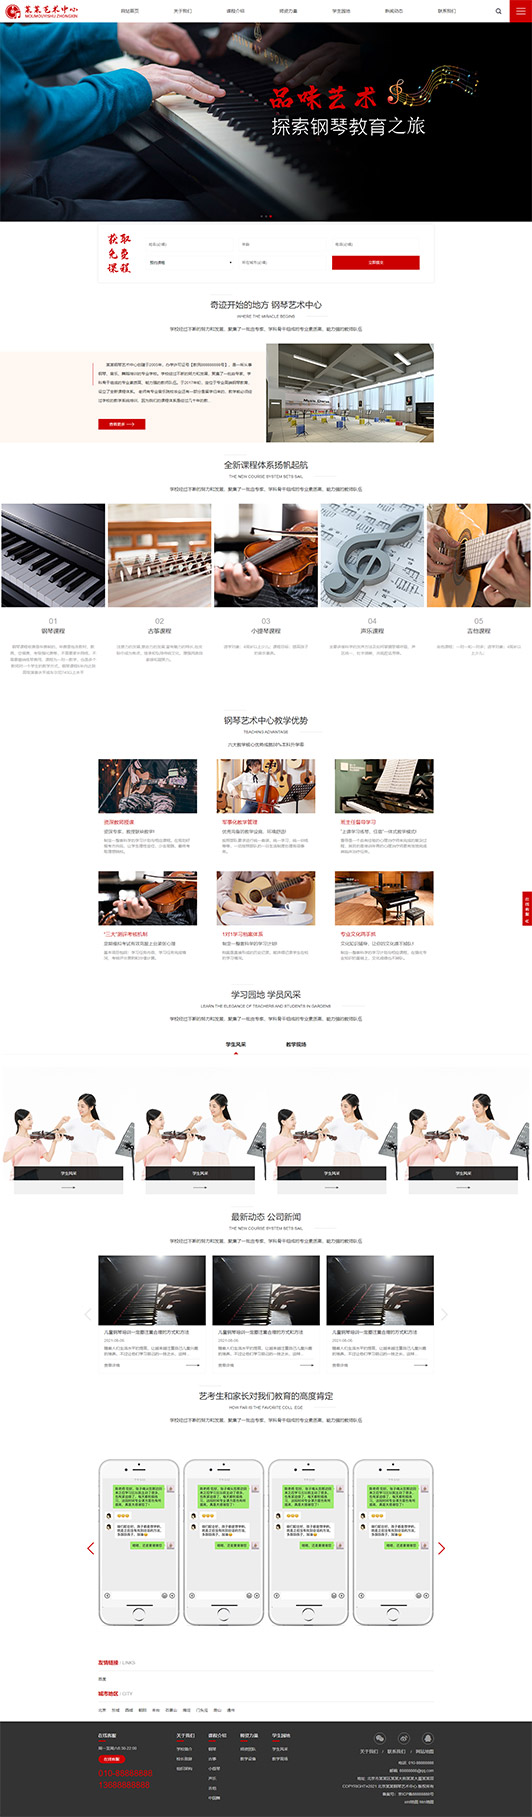 抚州钢琴艺术培训公司响应式企业网站